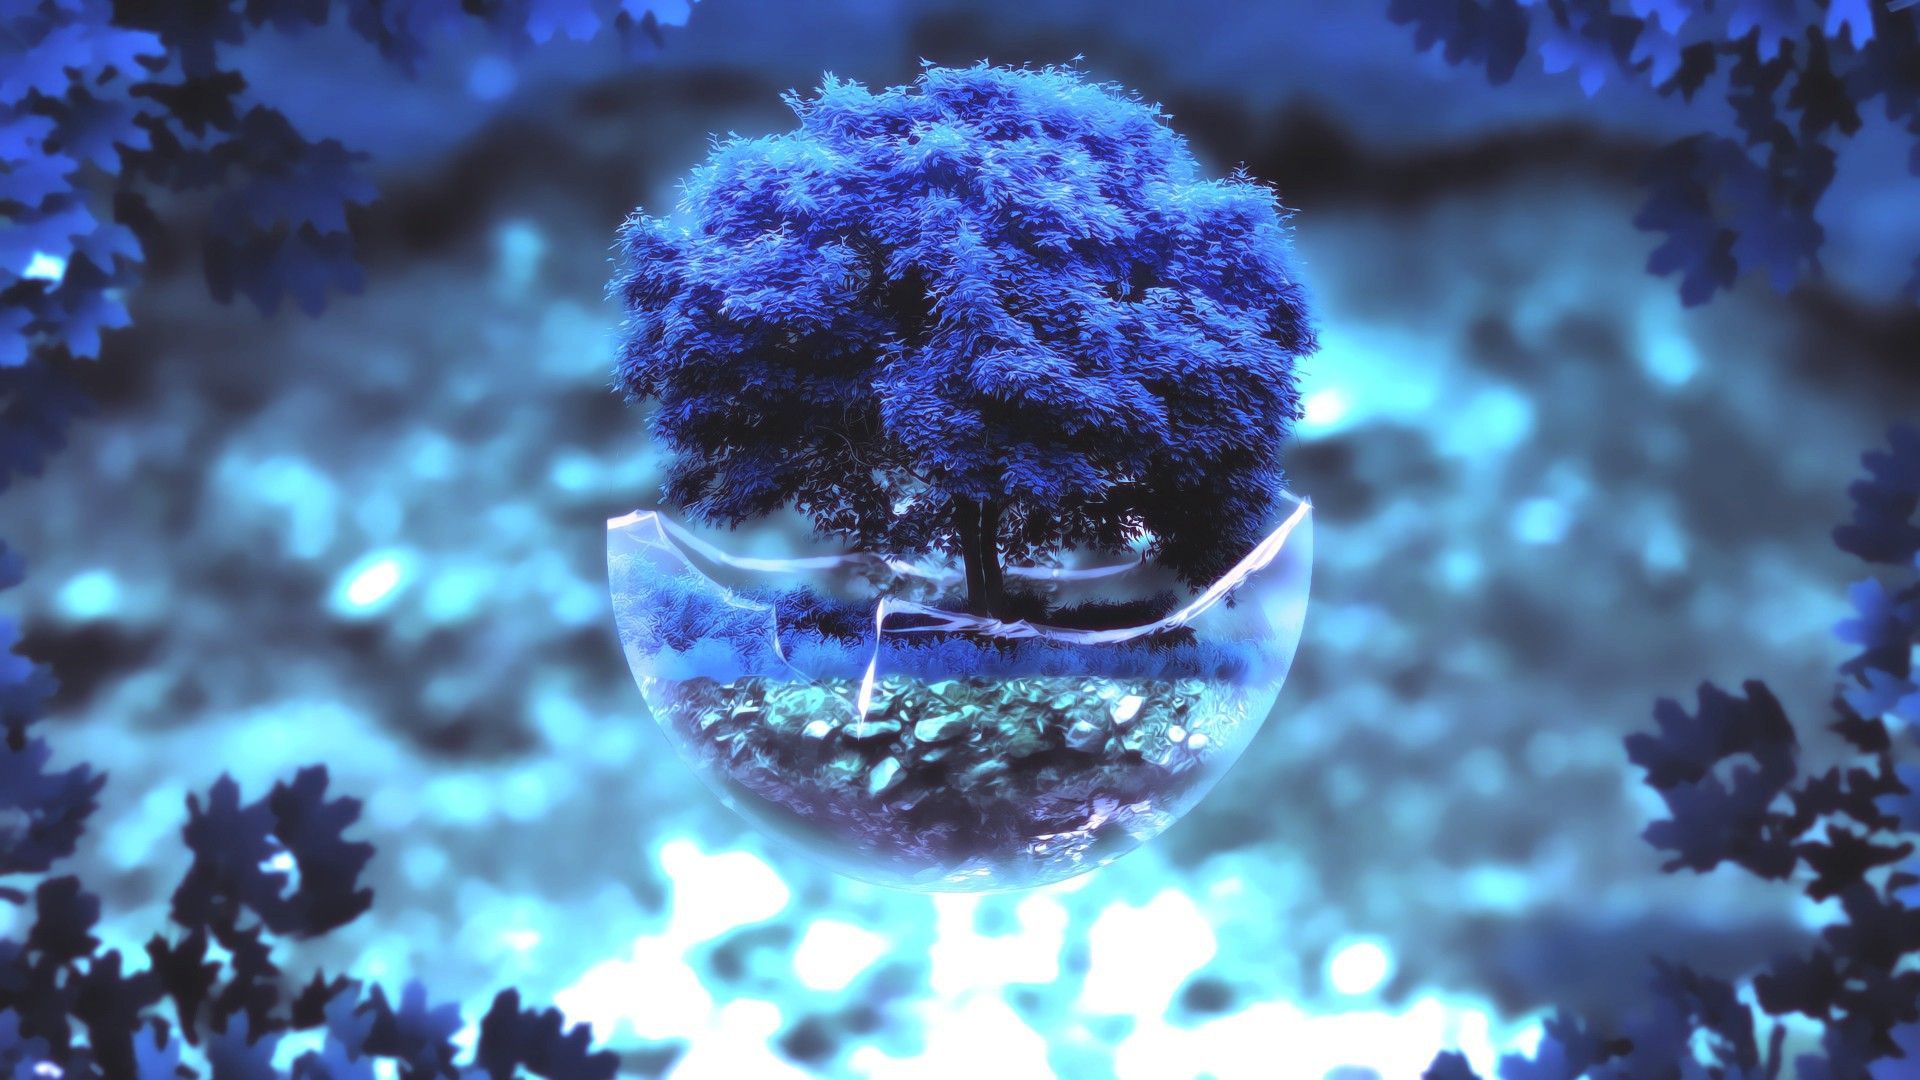  تصویر درخت بونسایا با برگ های فوق العاده زیبا رنگ آبی 